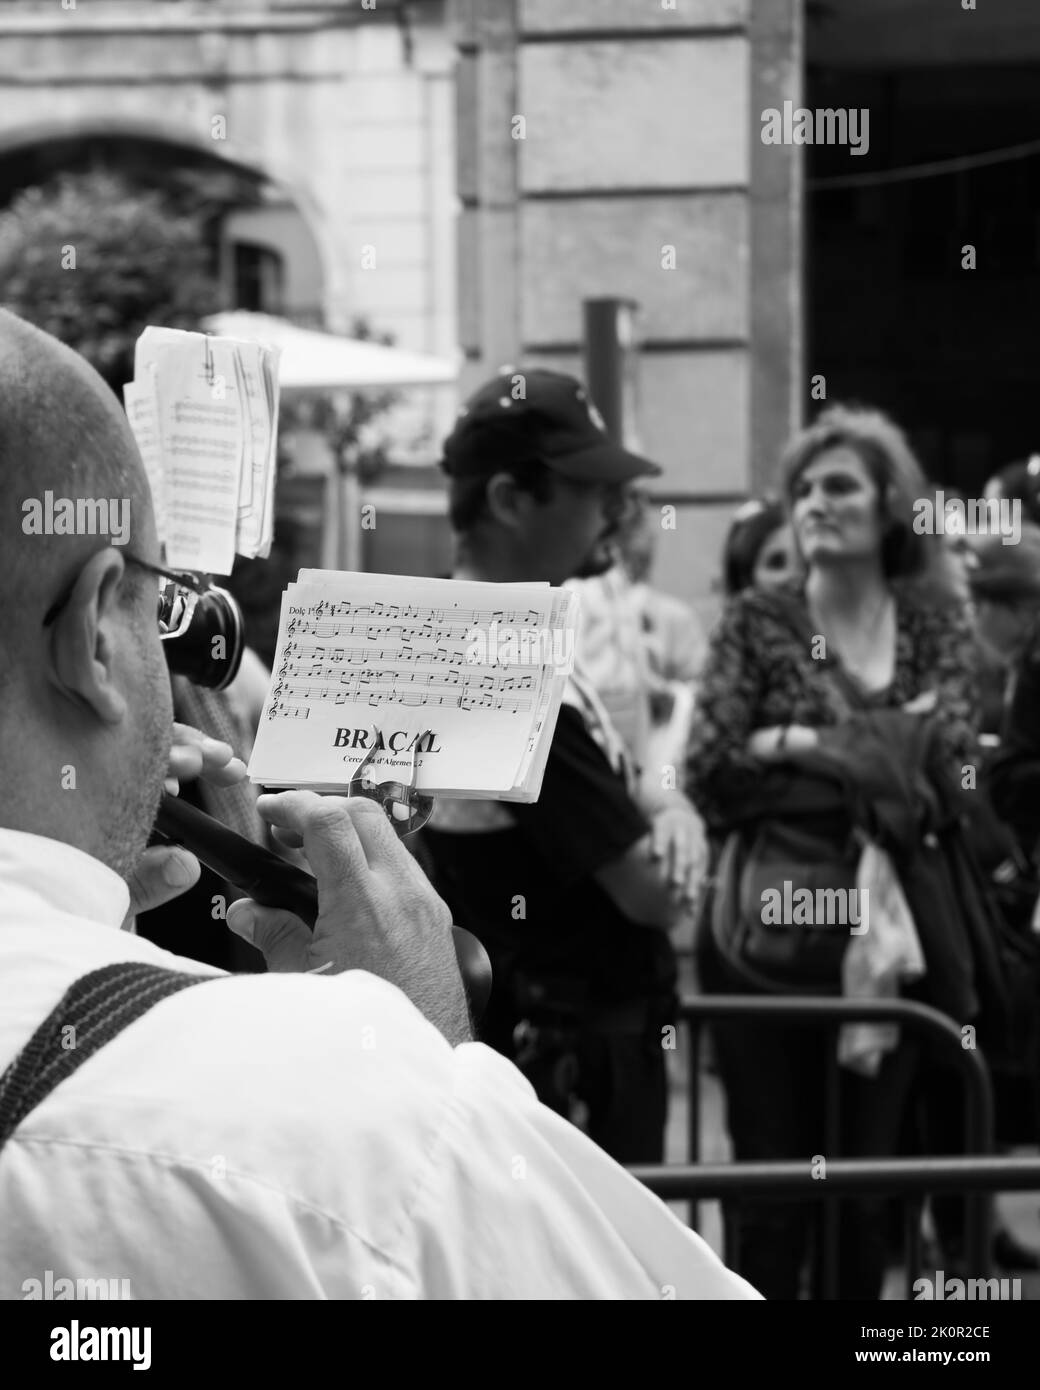 Alicante, España - 1 de junio de 2014: Bandsman tocando pipe de música en la calle. Fotografía en blanco y negro Foto de stock